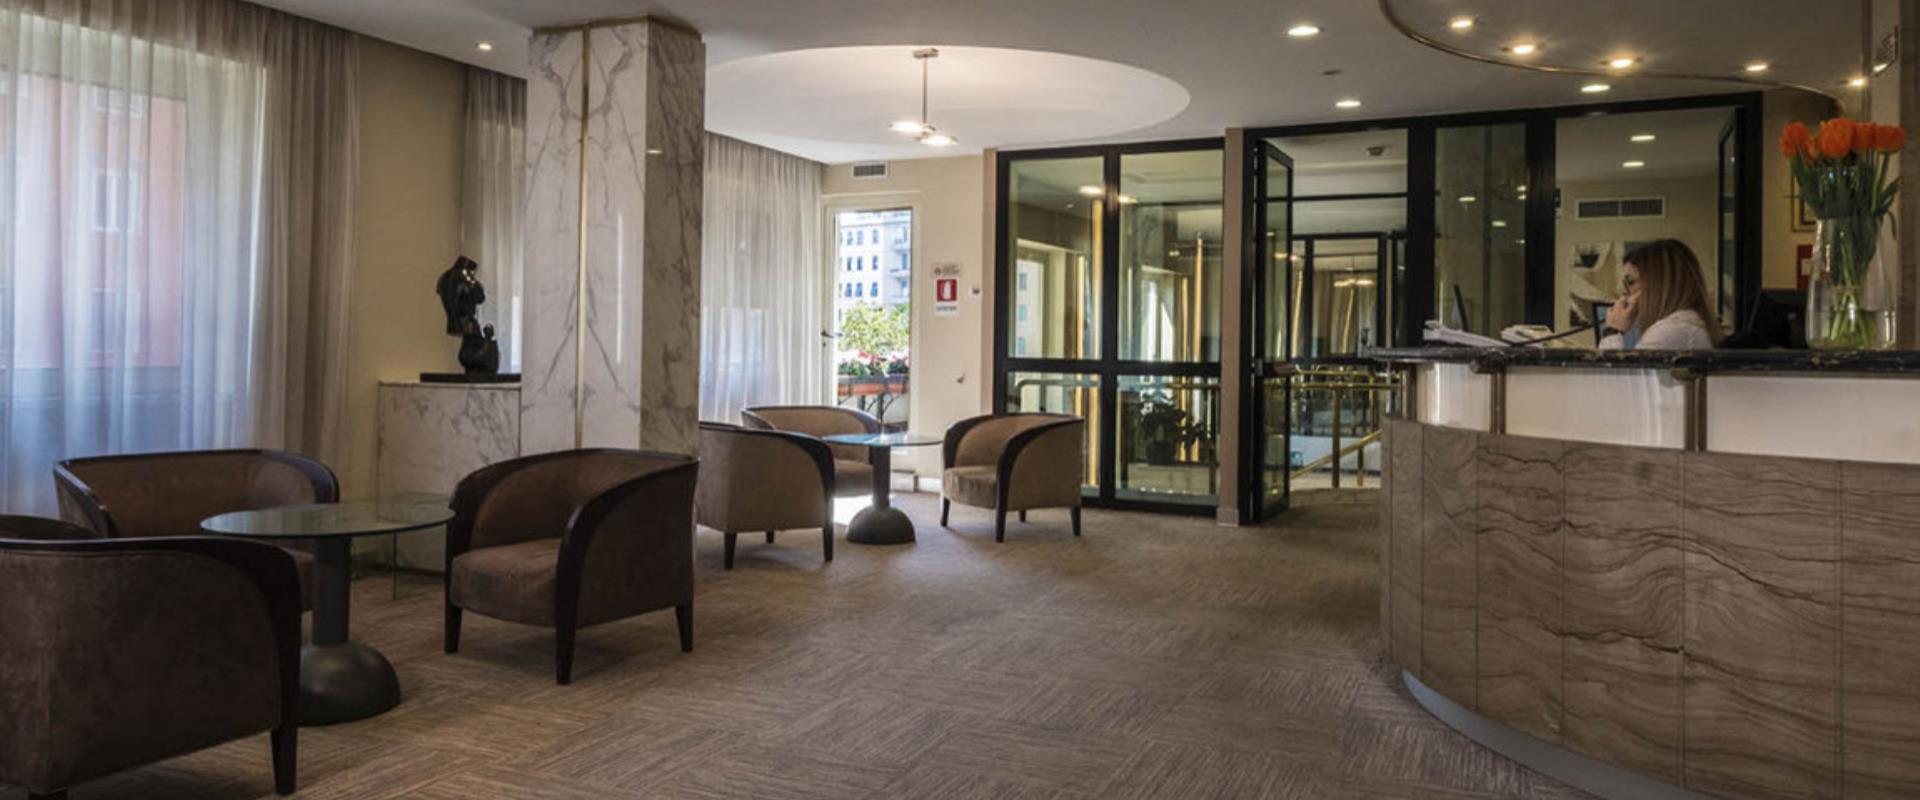 Best Western Hotel Piccadilly Hall, Hotel 3 estrellas San Giovanni en Roma, recientemente renovado